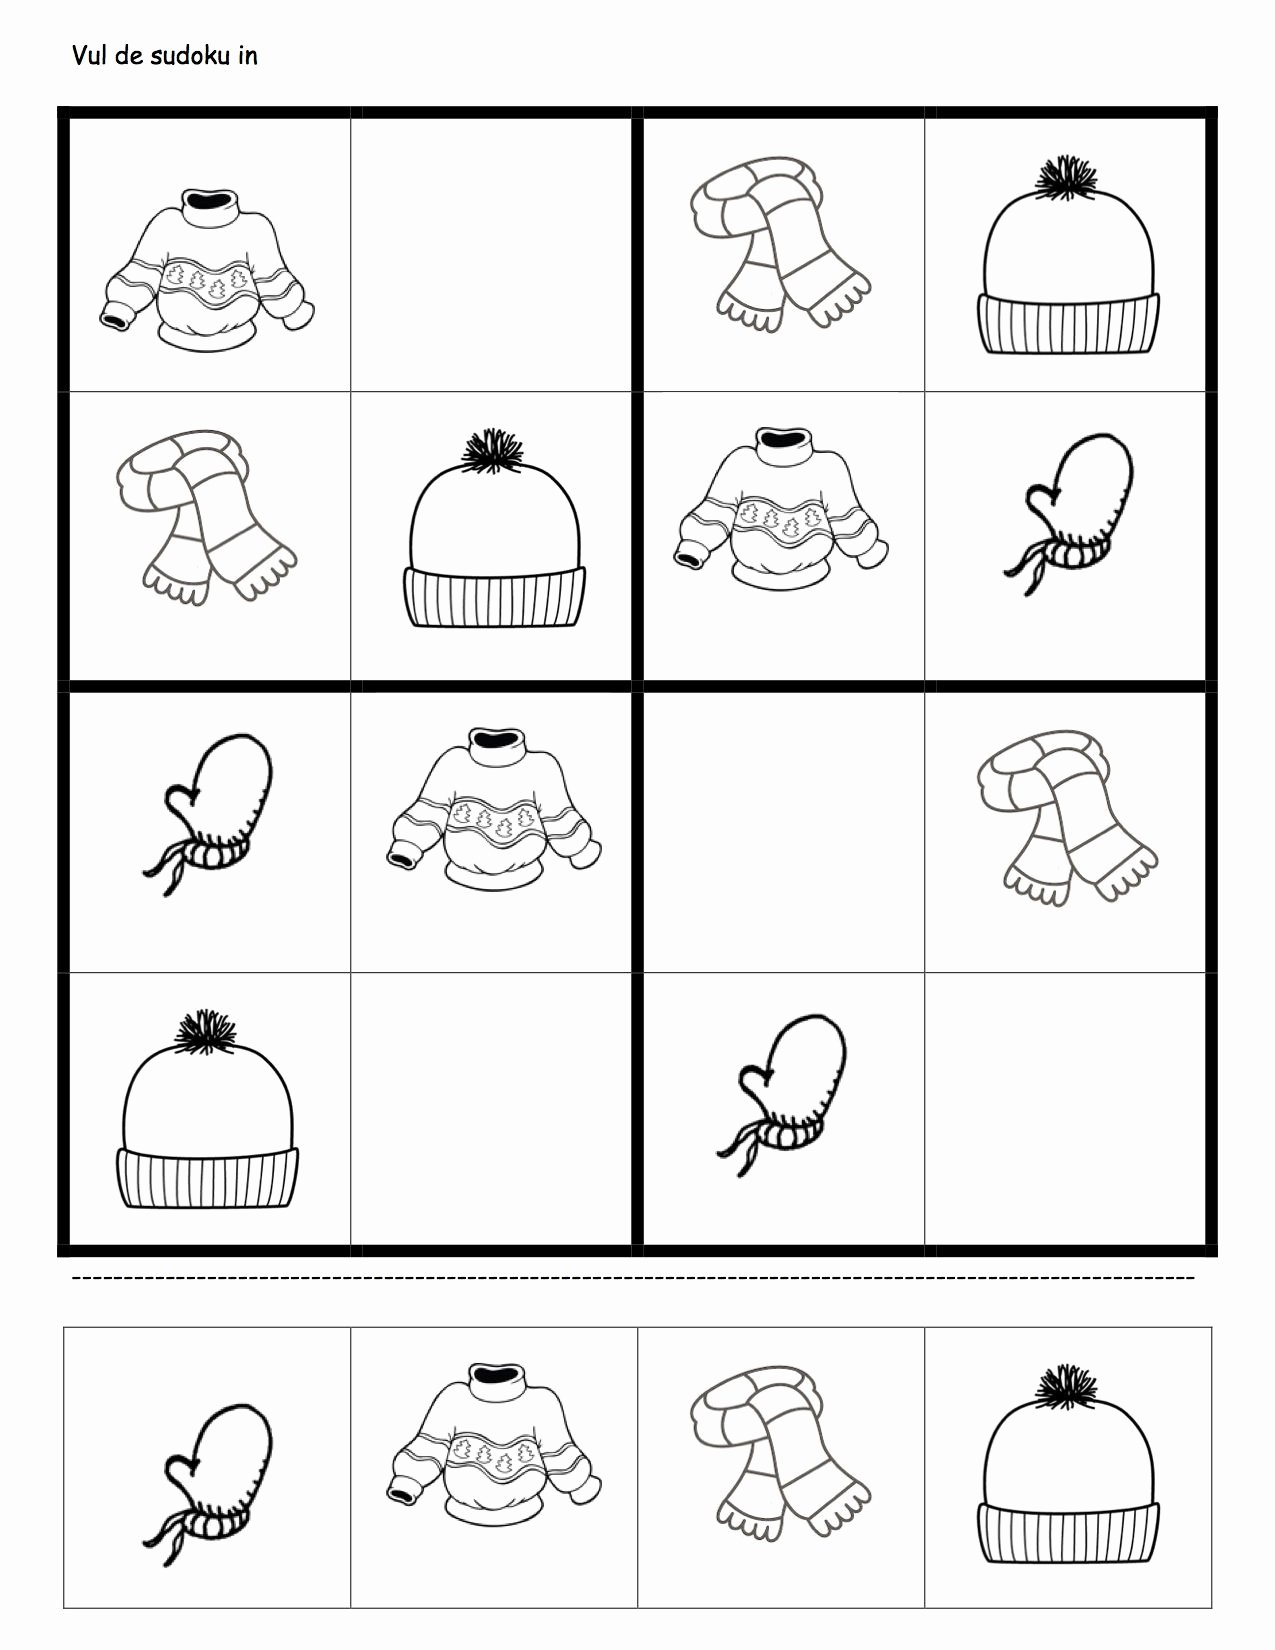 Printable Blank Sudoku 4 Per Page Awesome Sudoku Vorlagen Kinderbilder Download